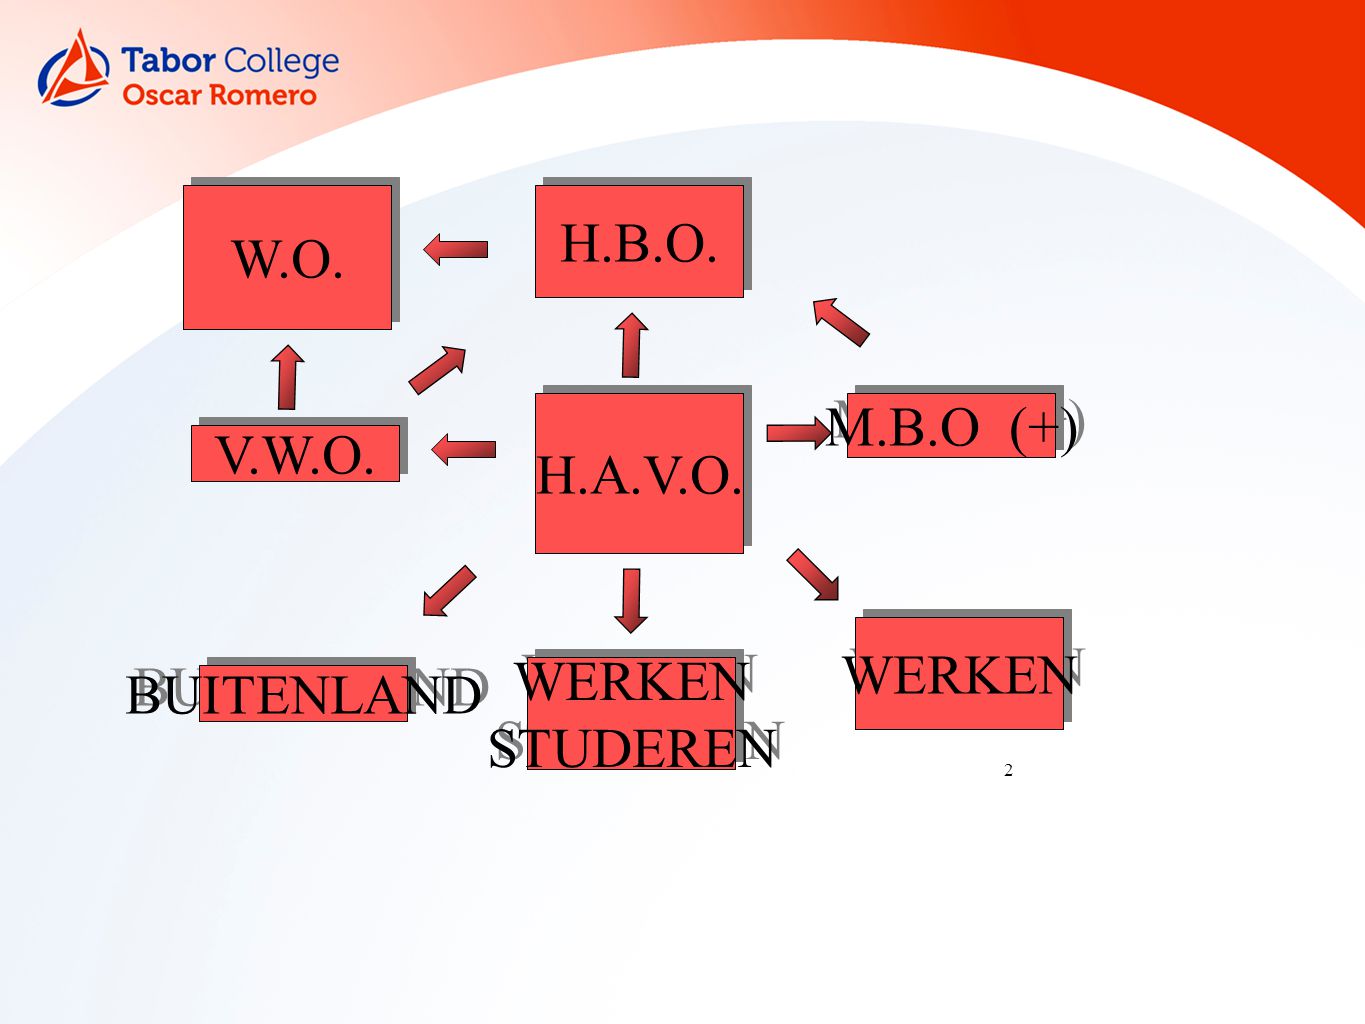 2 H.A.V.O. V.W.O. W.O. WERKEN STUDEREN WERKEN STUDEREN H.B.O. WERKEN BUITENLAND M.B.O (+)